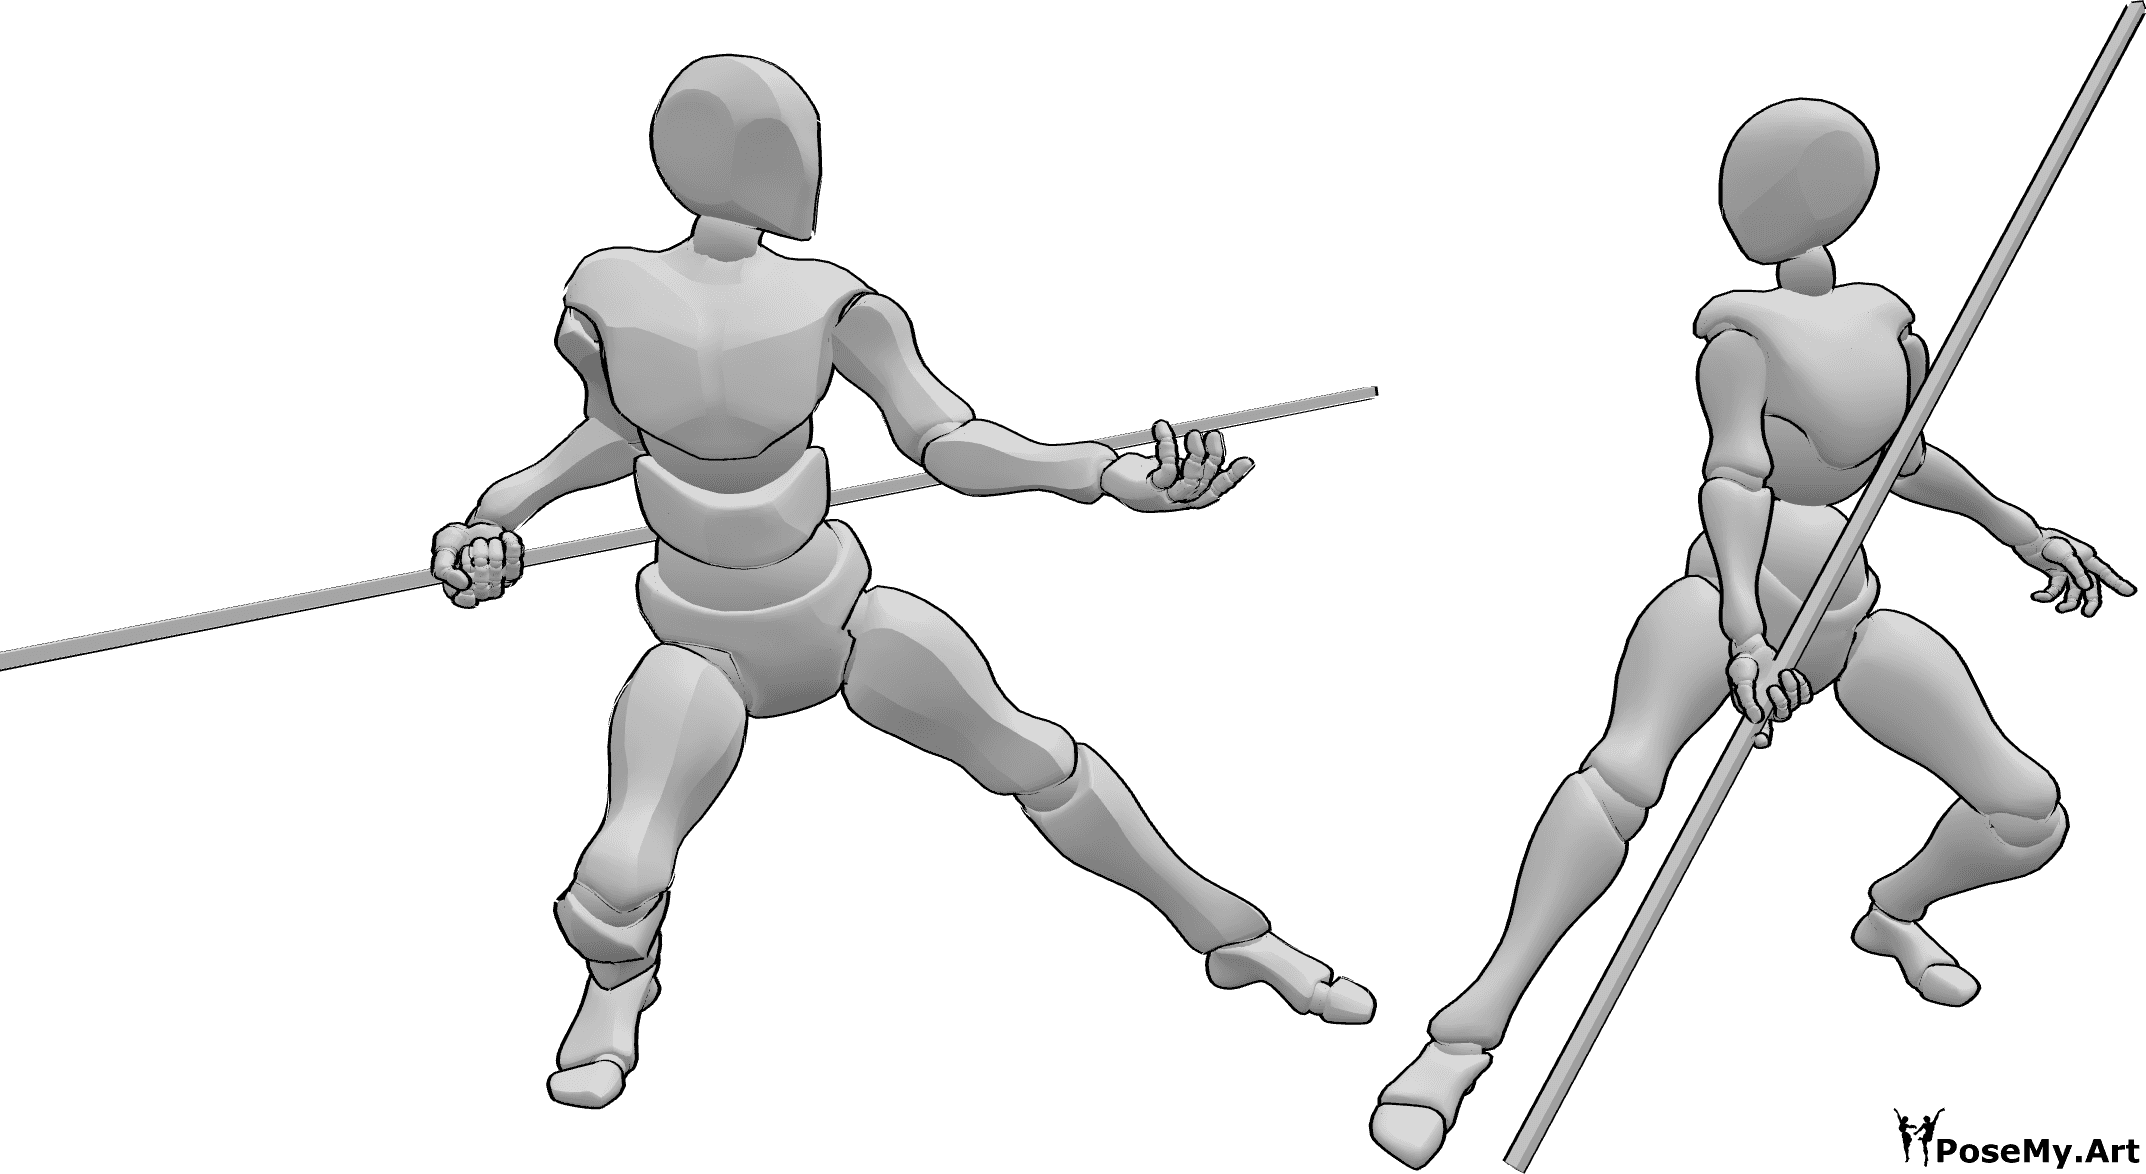 Referência de poses- Pose de luta de homem e mulher - A fêmea e o macho começam a lutar pose